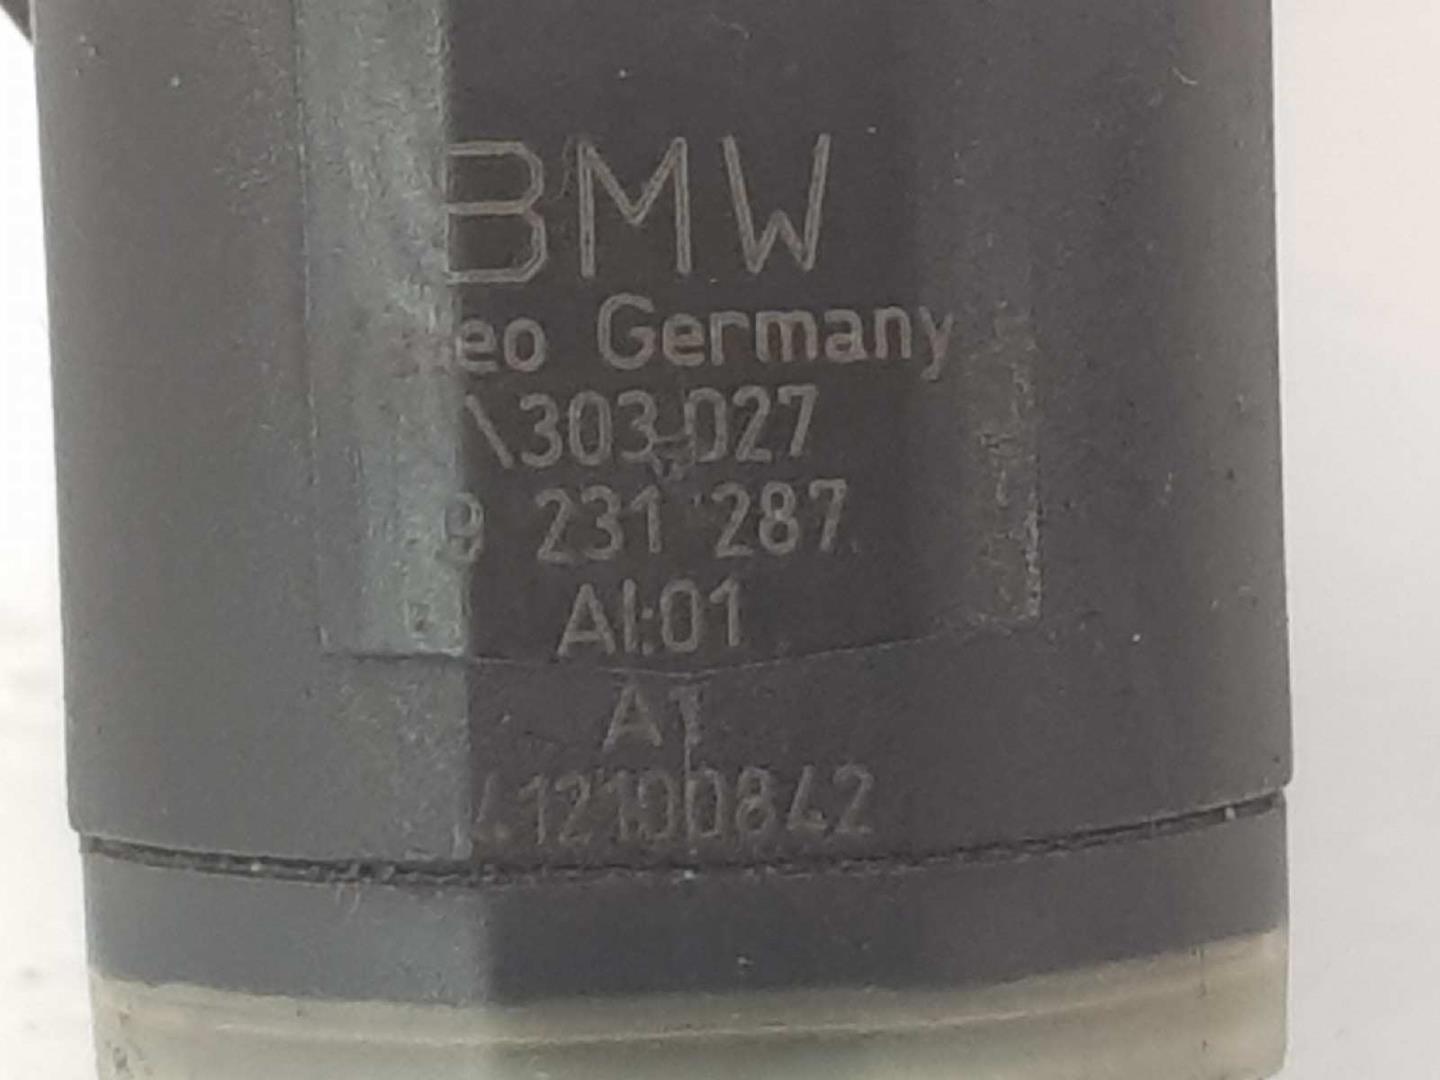 BMW X6 E71/E72 (2008-2012) Front Parking Sensor 66209231287, 66209270501, 9231287303027 24116764